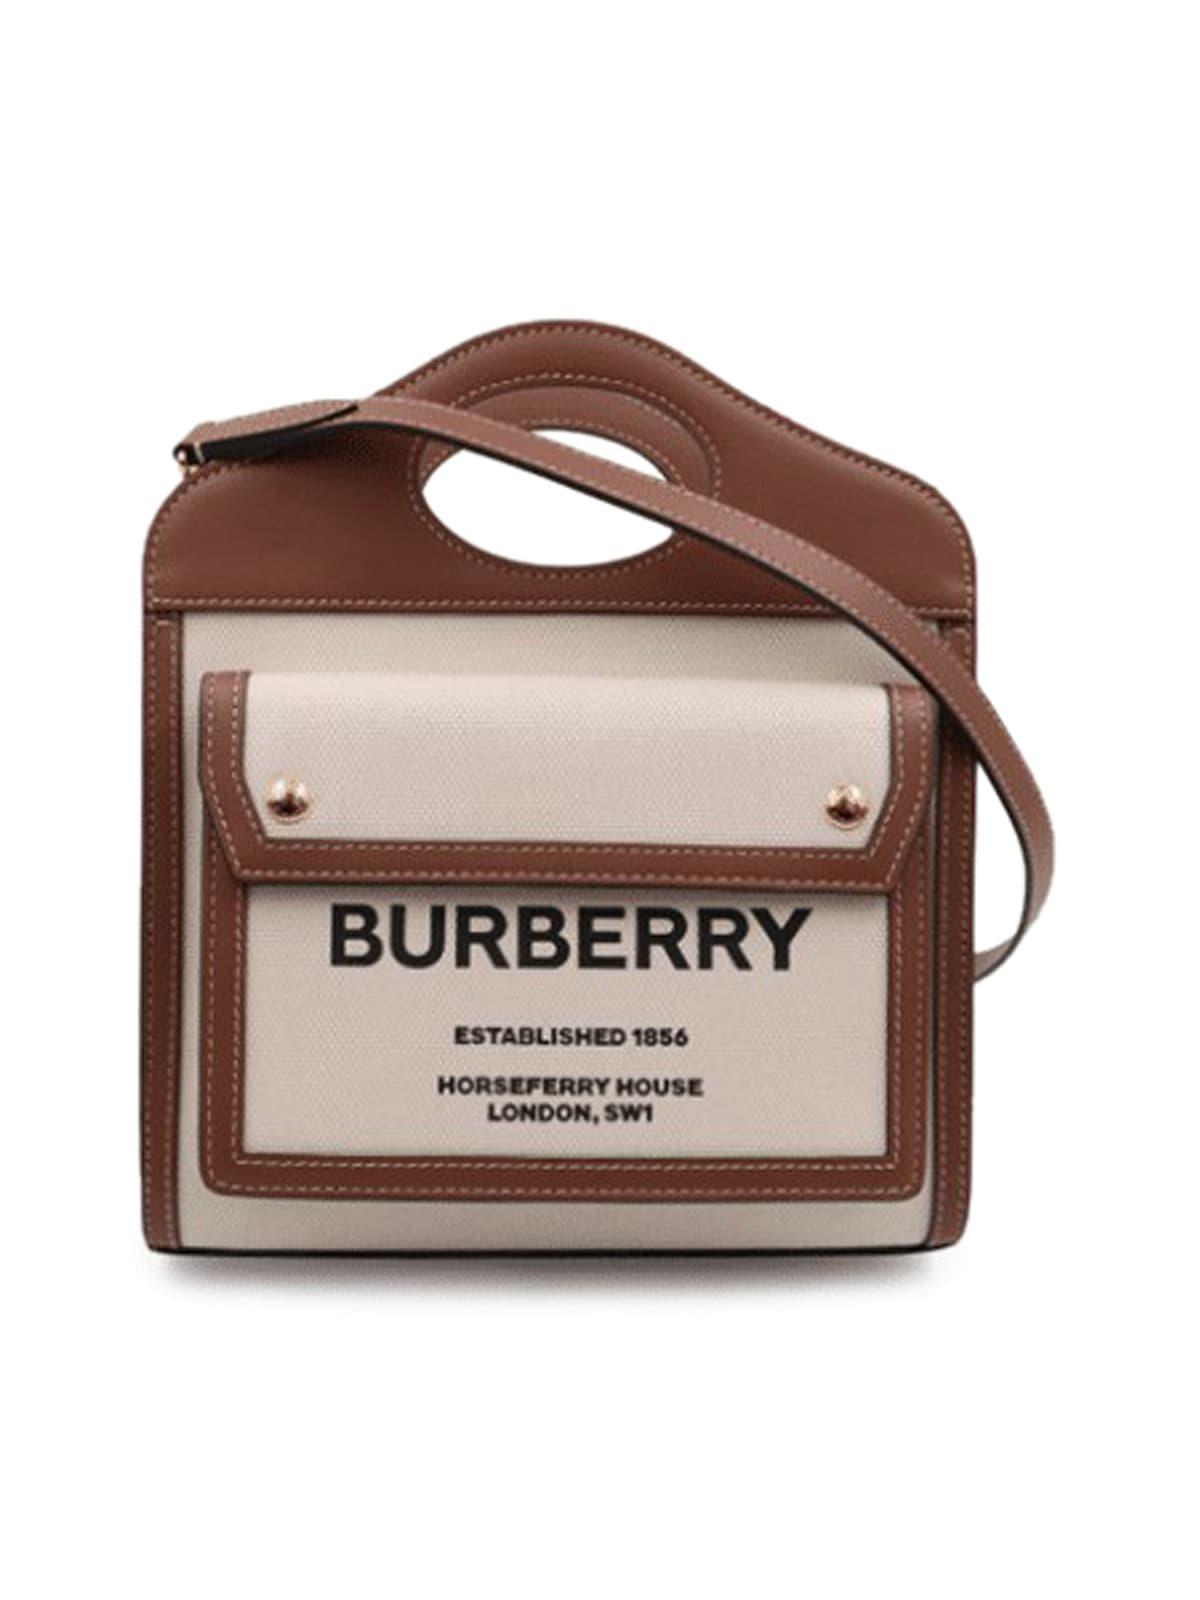 Ll Mn Pocket Dtl Ll6 Tote Bag - Burberry - Natural/Tan - Cotton